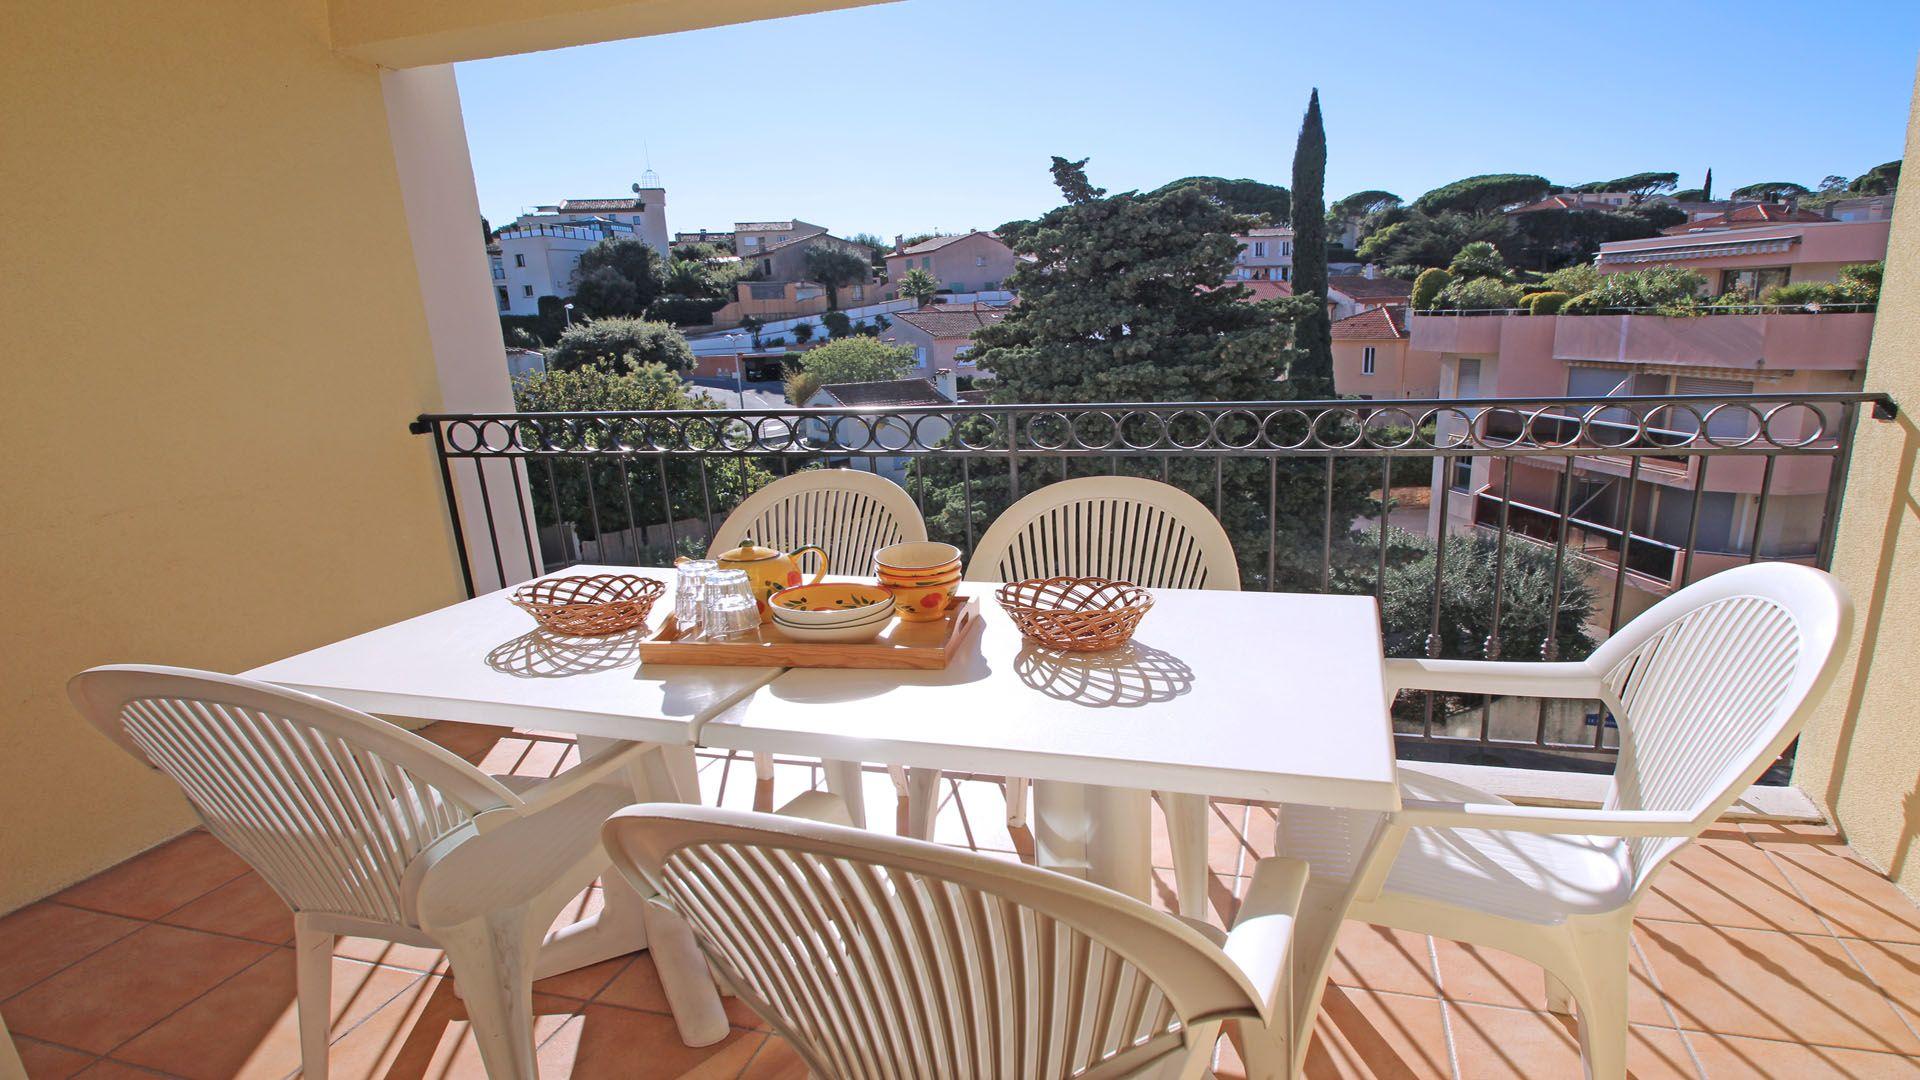 Ferienwohnung für 6 Personen ca. 74 m² i Ferienwohnung  Côte d'Azur